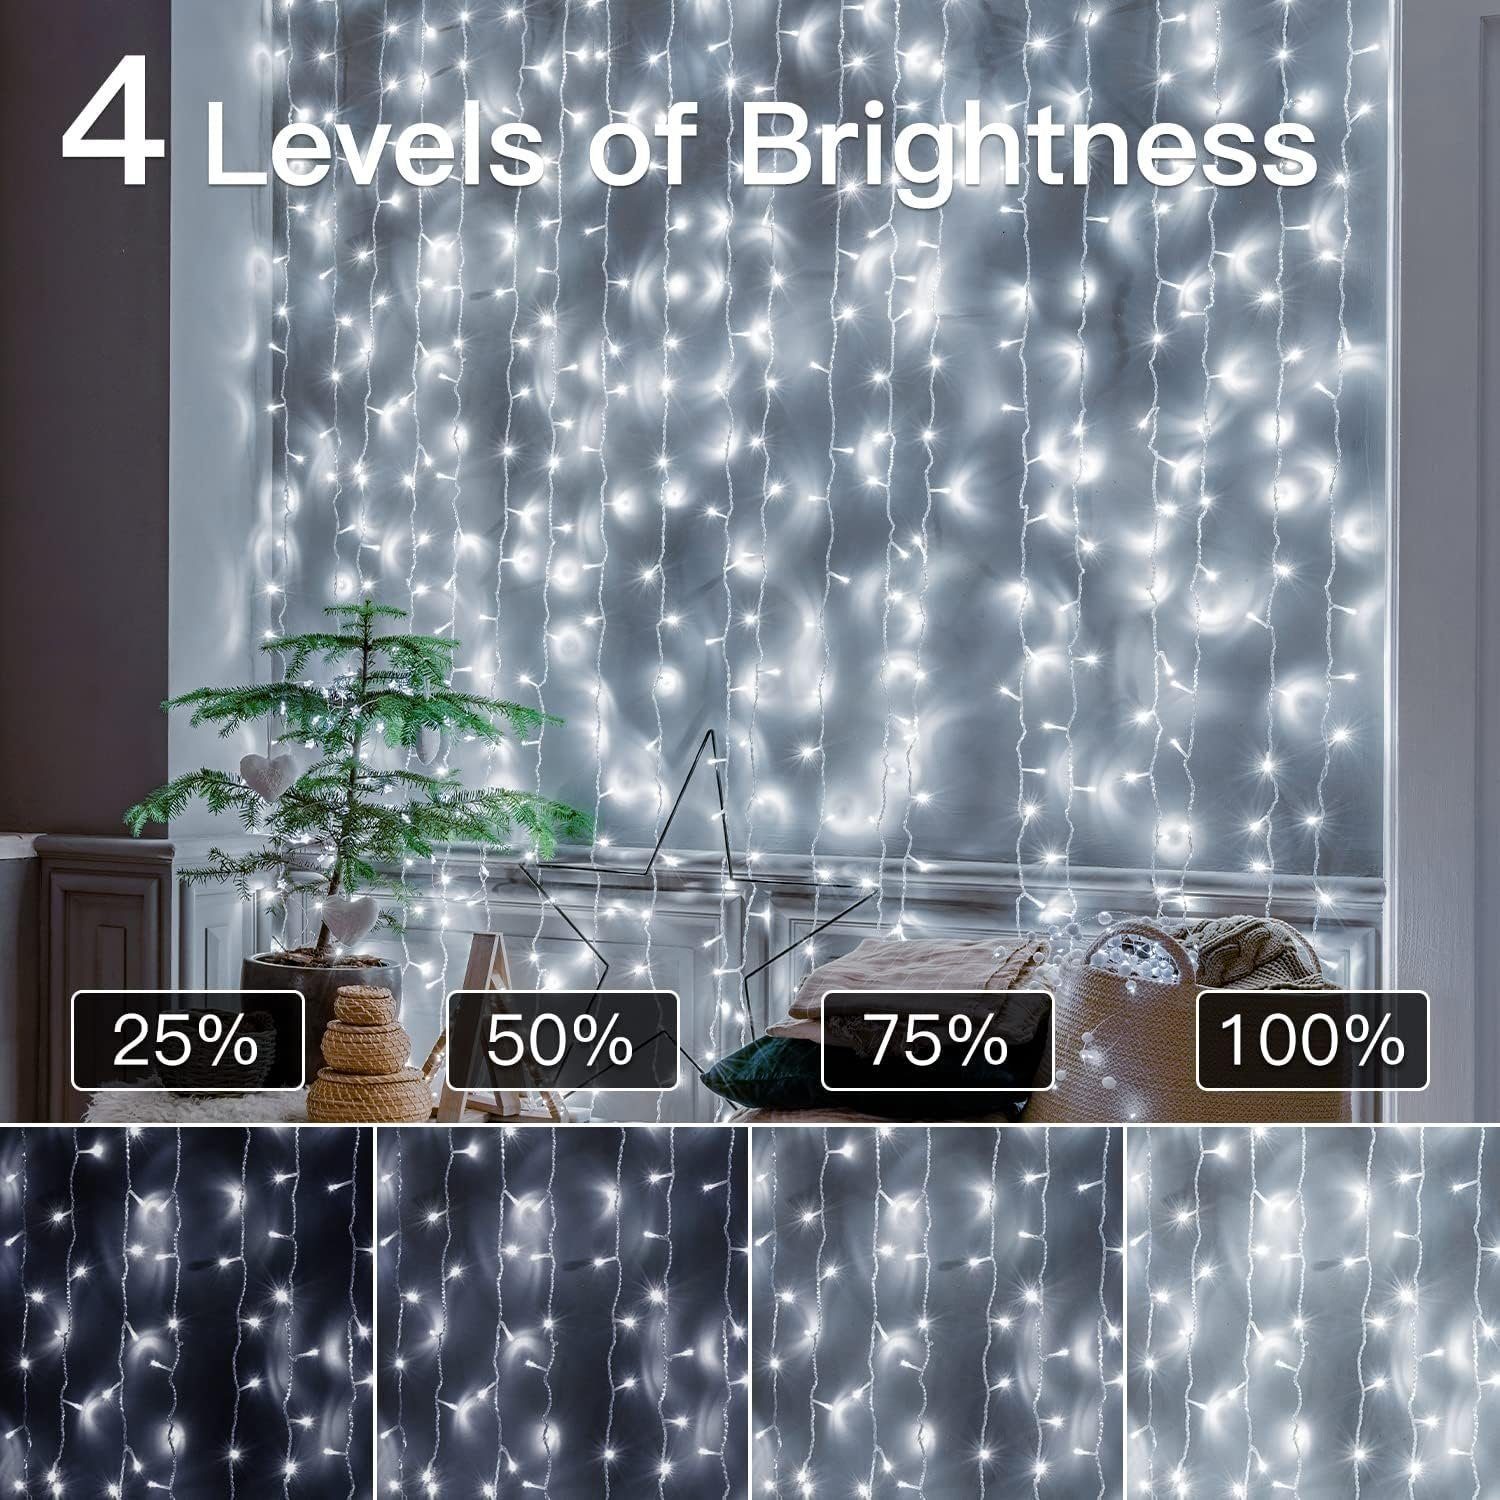 Diyarts LED-Lichterkette, 400-flammig, 60m LED Helligkeitsstufen. 8 vielseitige Beleuchtung, 4 Modi